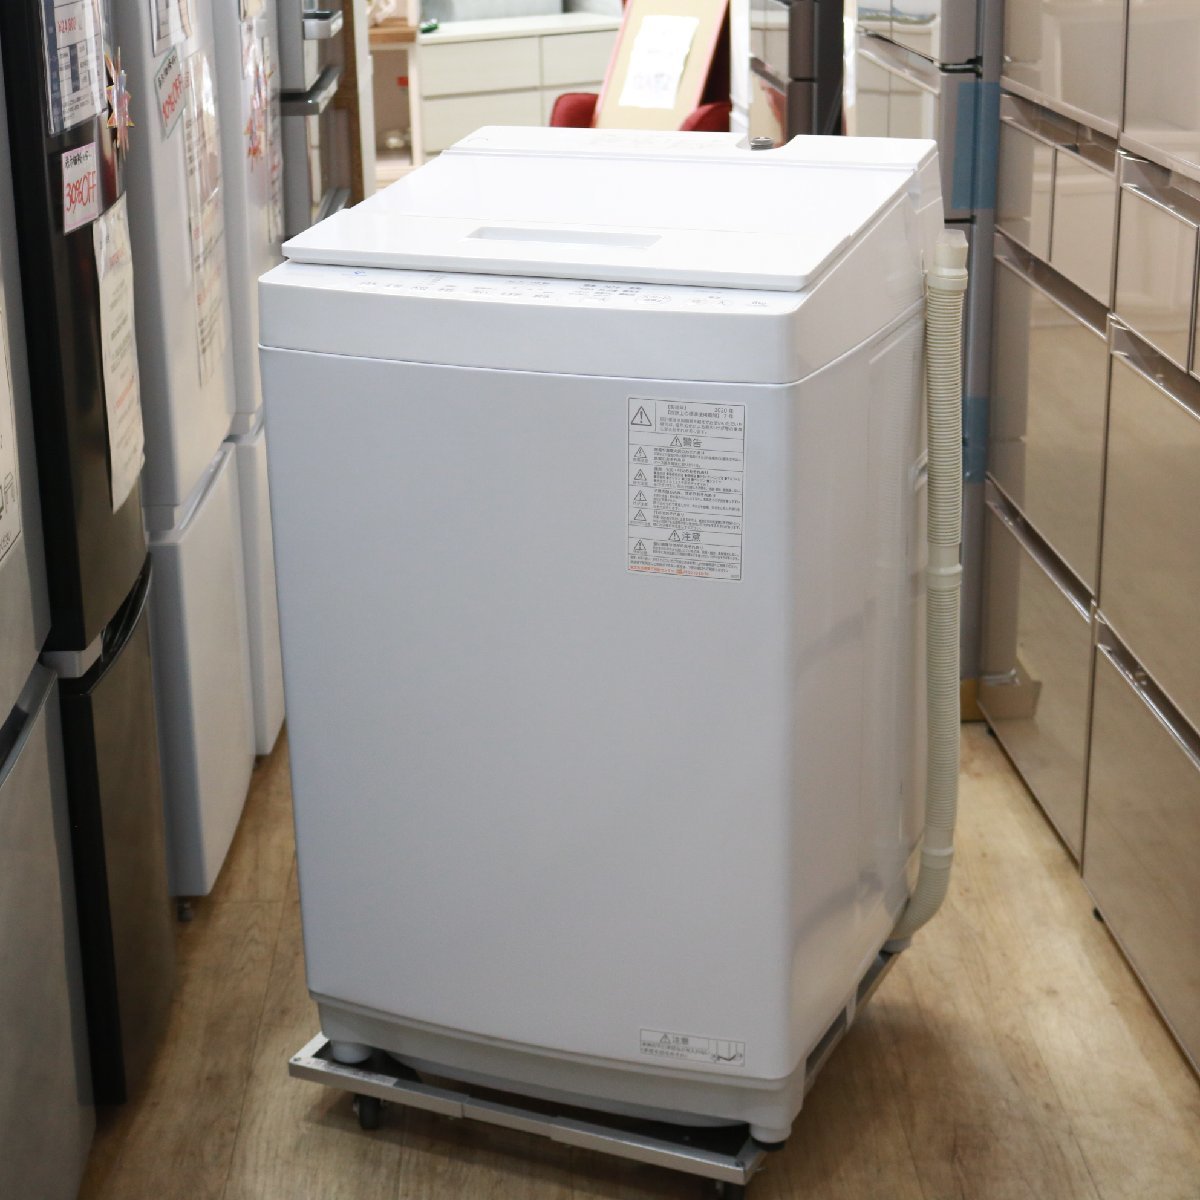 東京都中央区にて 東芝 全自動洗濯機 AW-8D9 2020年製 を出張買取させて頂きました。